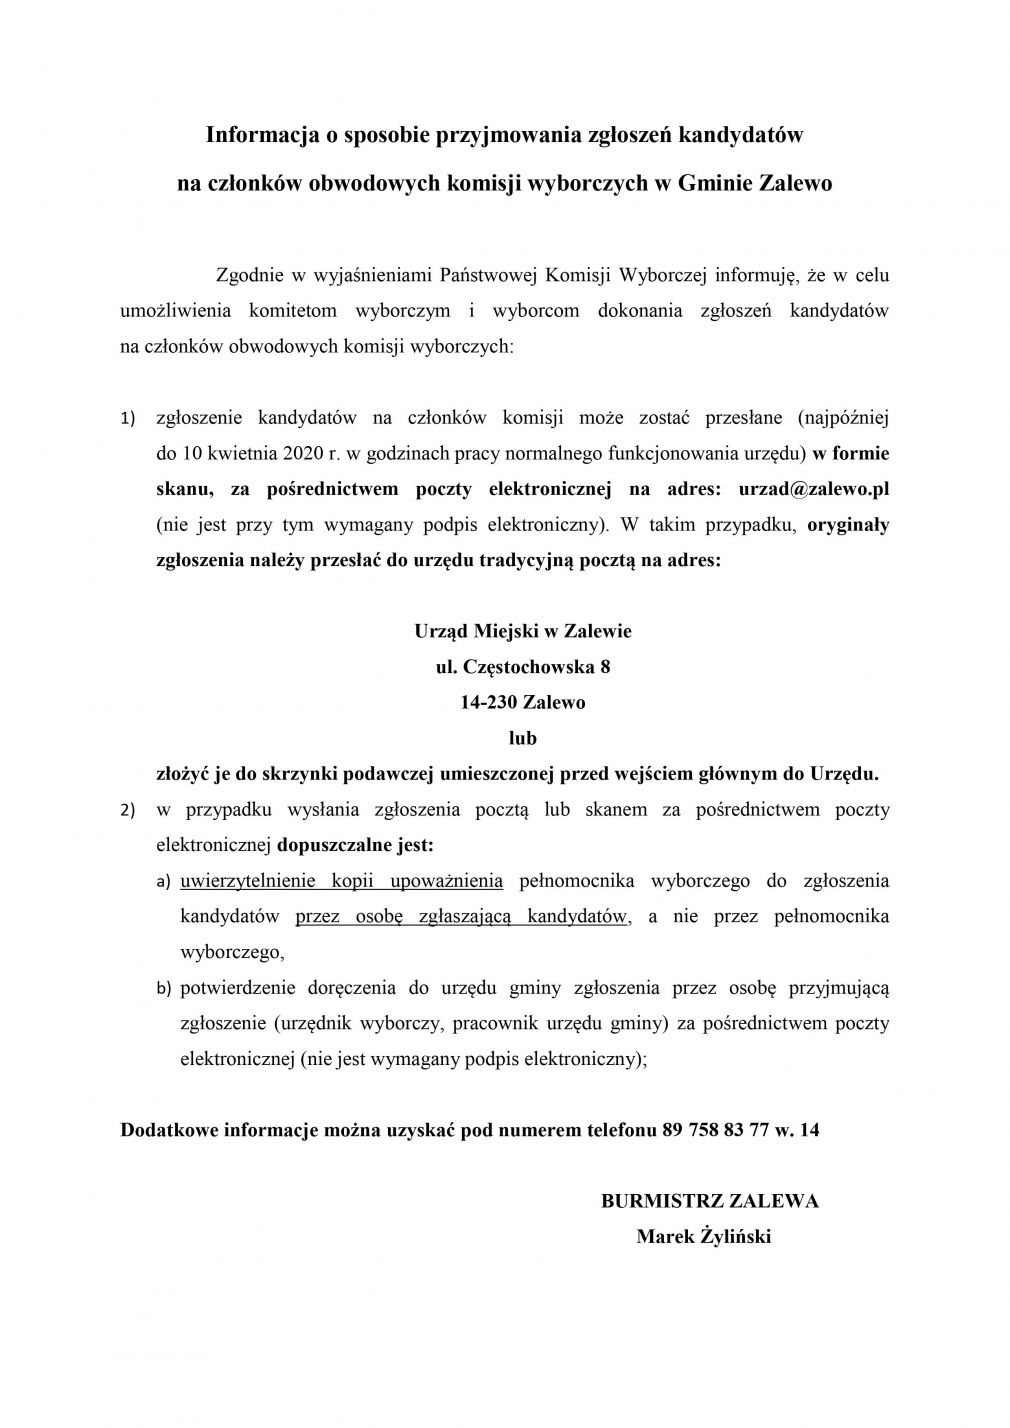 Informacja o sposobie przyjmowania zgłoszeń kandydatów na członków obwodowych komisji wyborczych w Gminie Zalewo